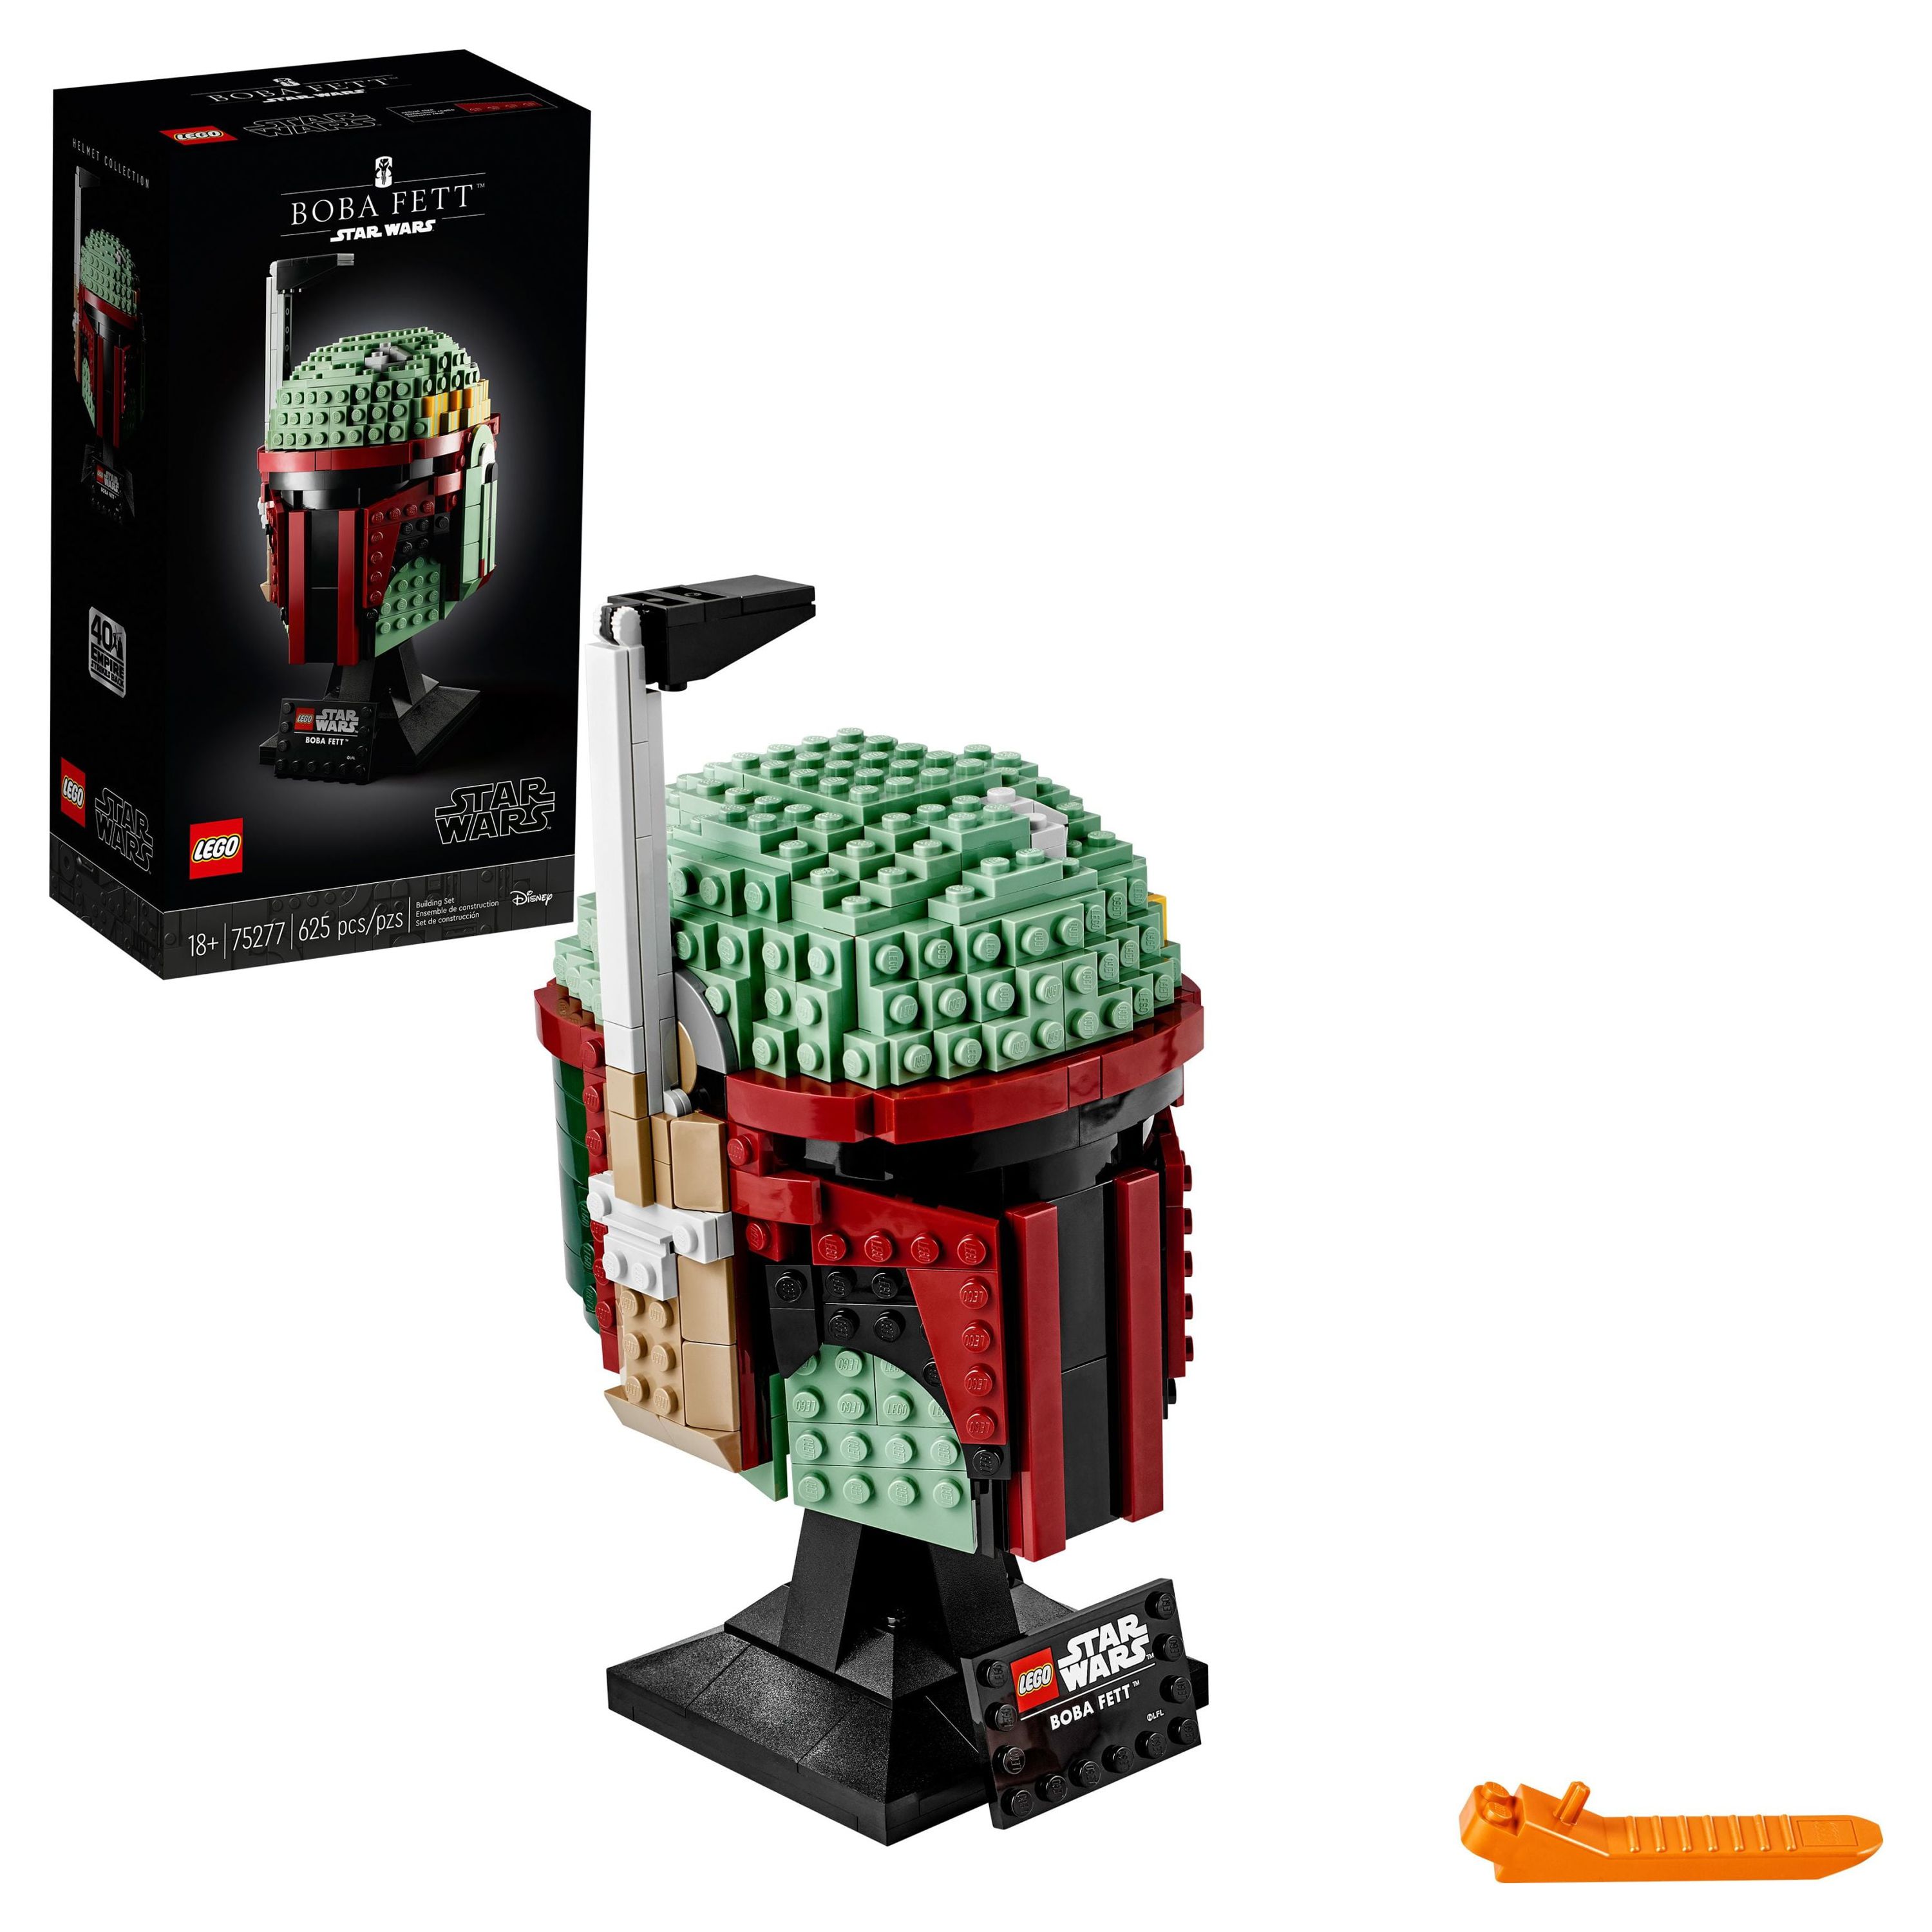 LEGO Star Wars Boba Fett Helmet 75277 Building Kit - image 1 of 6